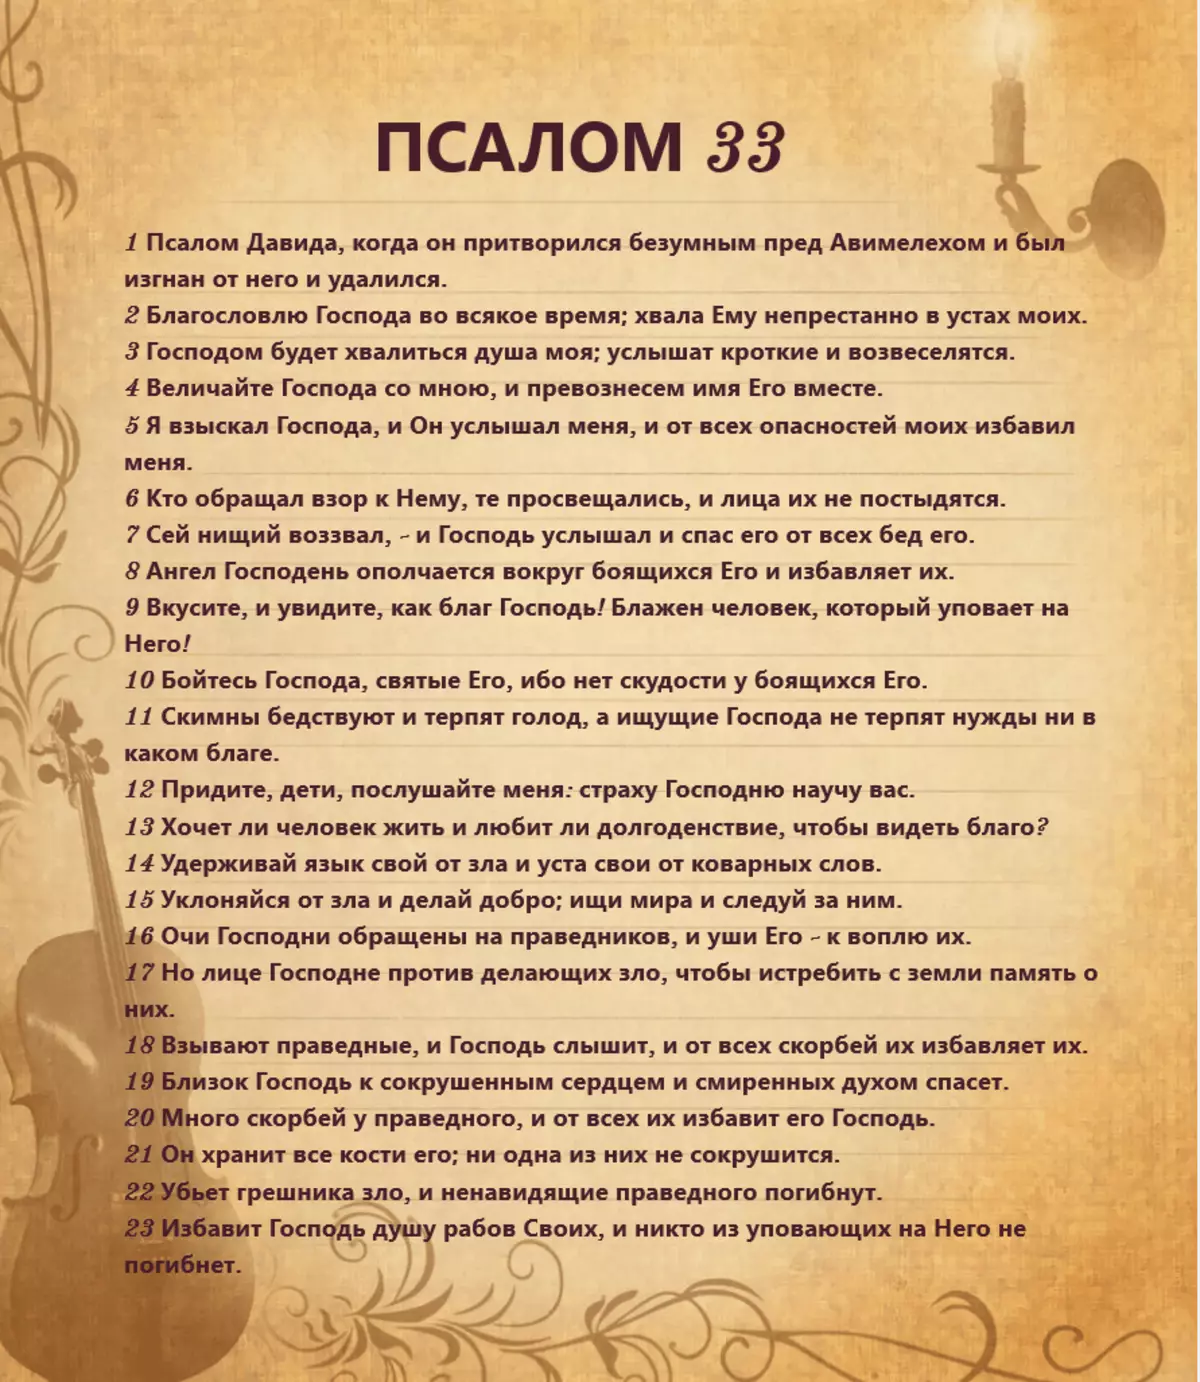 Psalam 33: Tekst molitve na ruskom, kako čitati 4545_3